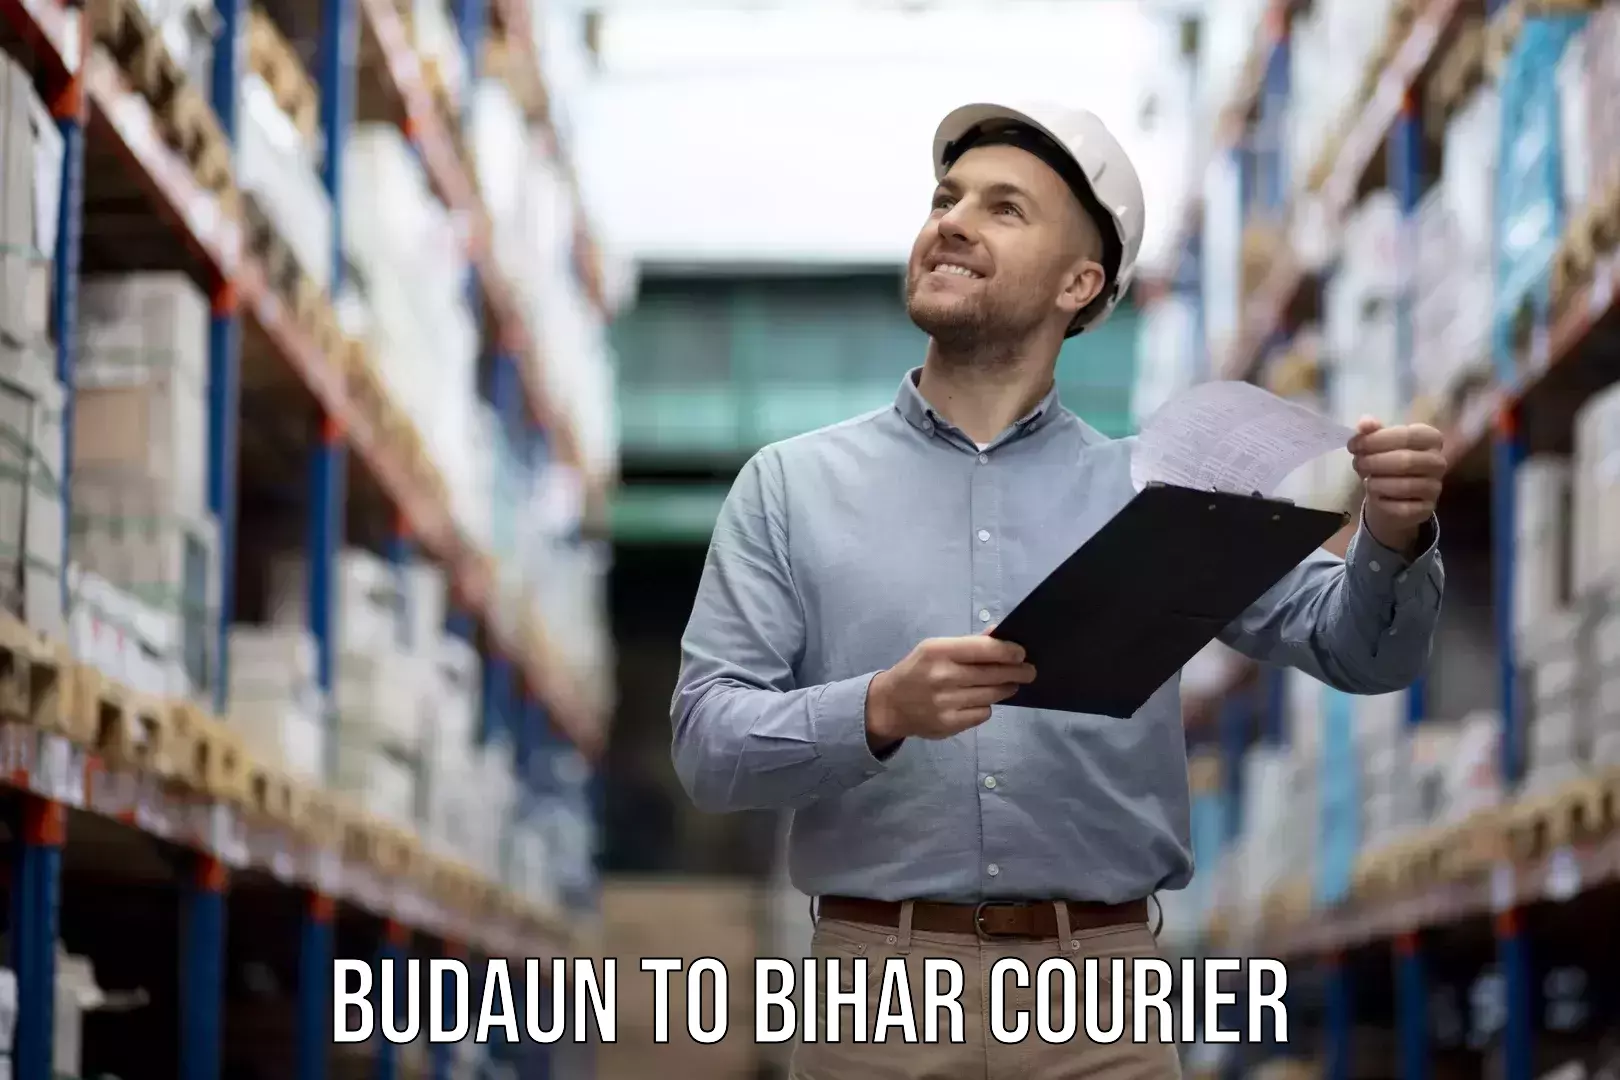 Professional furniture movers in Budaun to Bihar